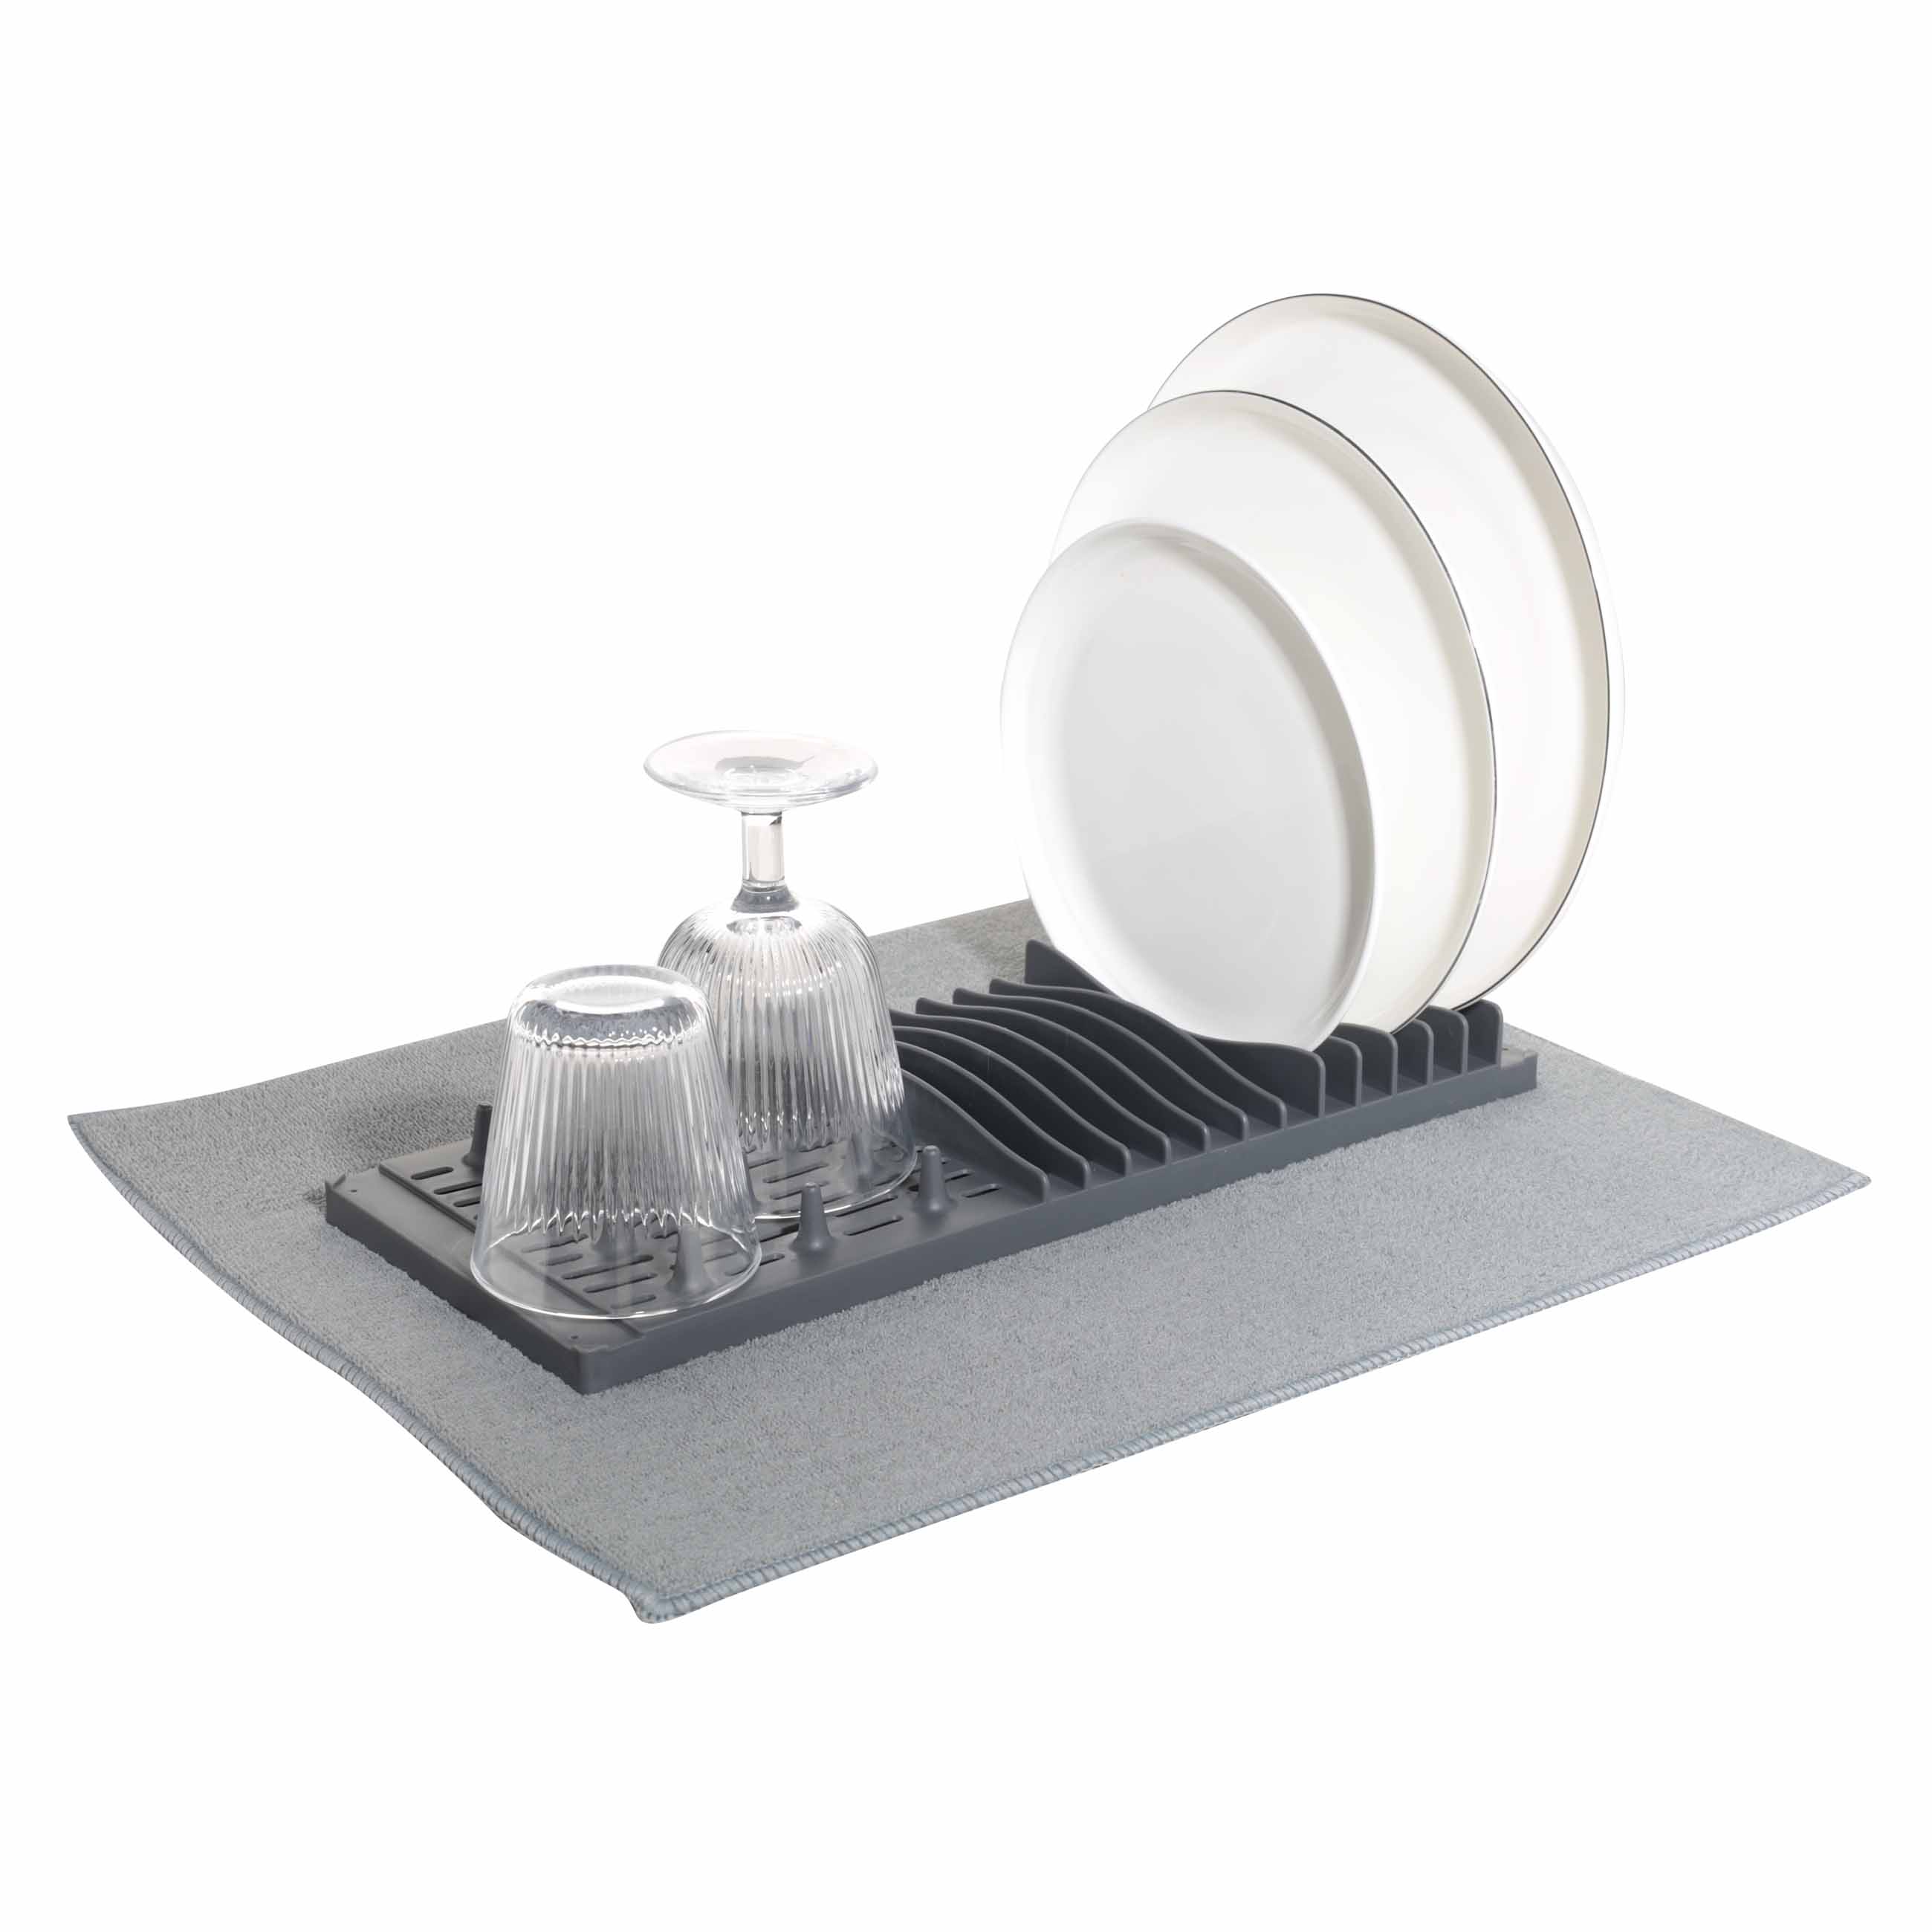 Коврик для сушки посуды с подставкой, 40х50 см, микрофибра/пластик, серый, Keeping